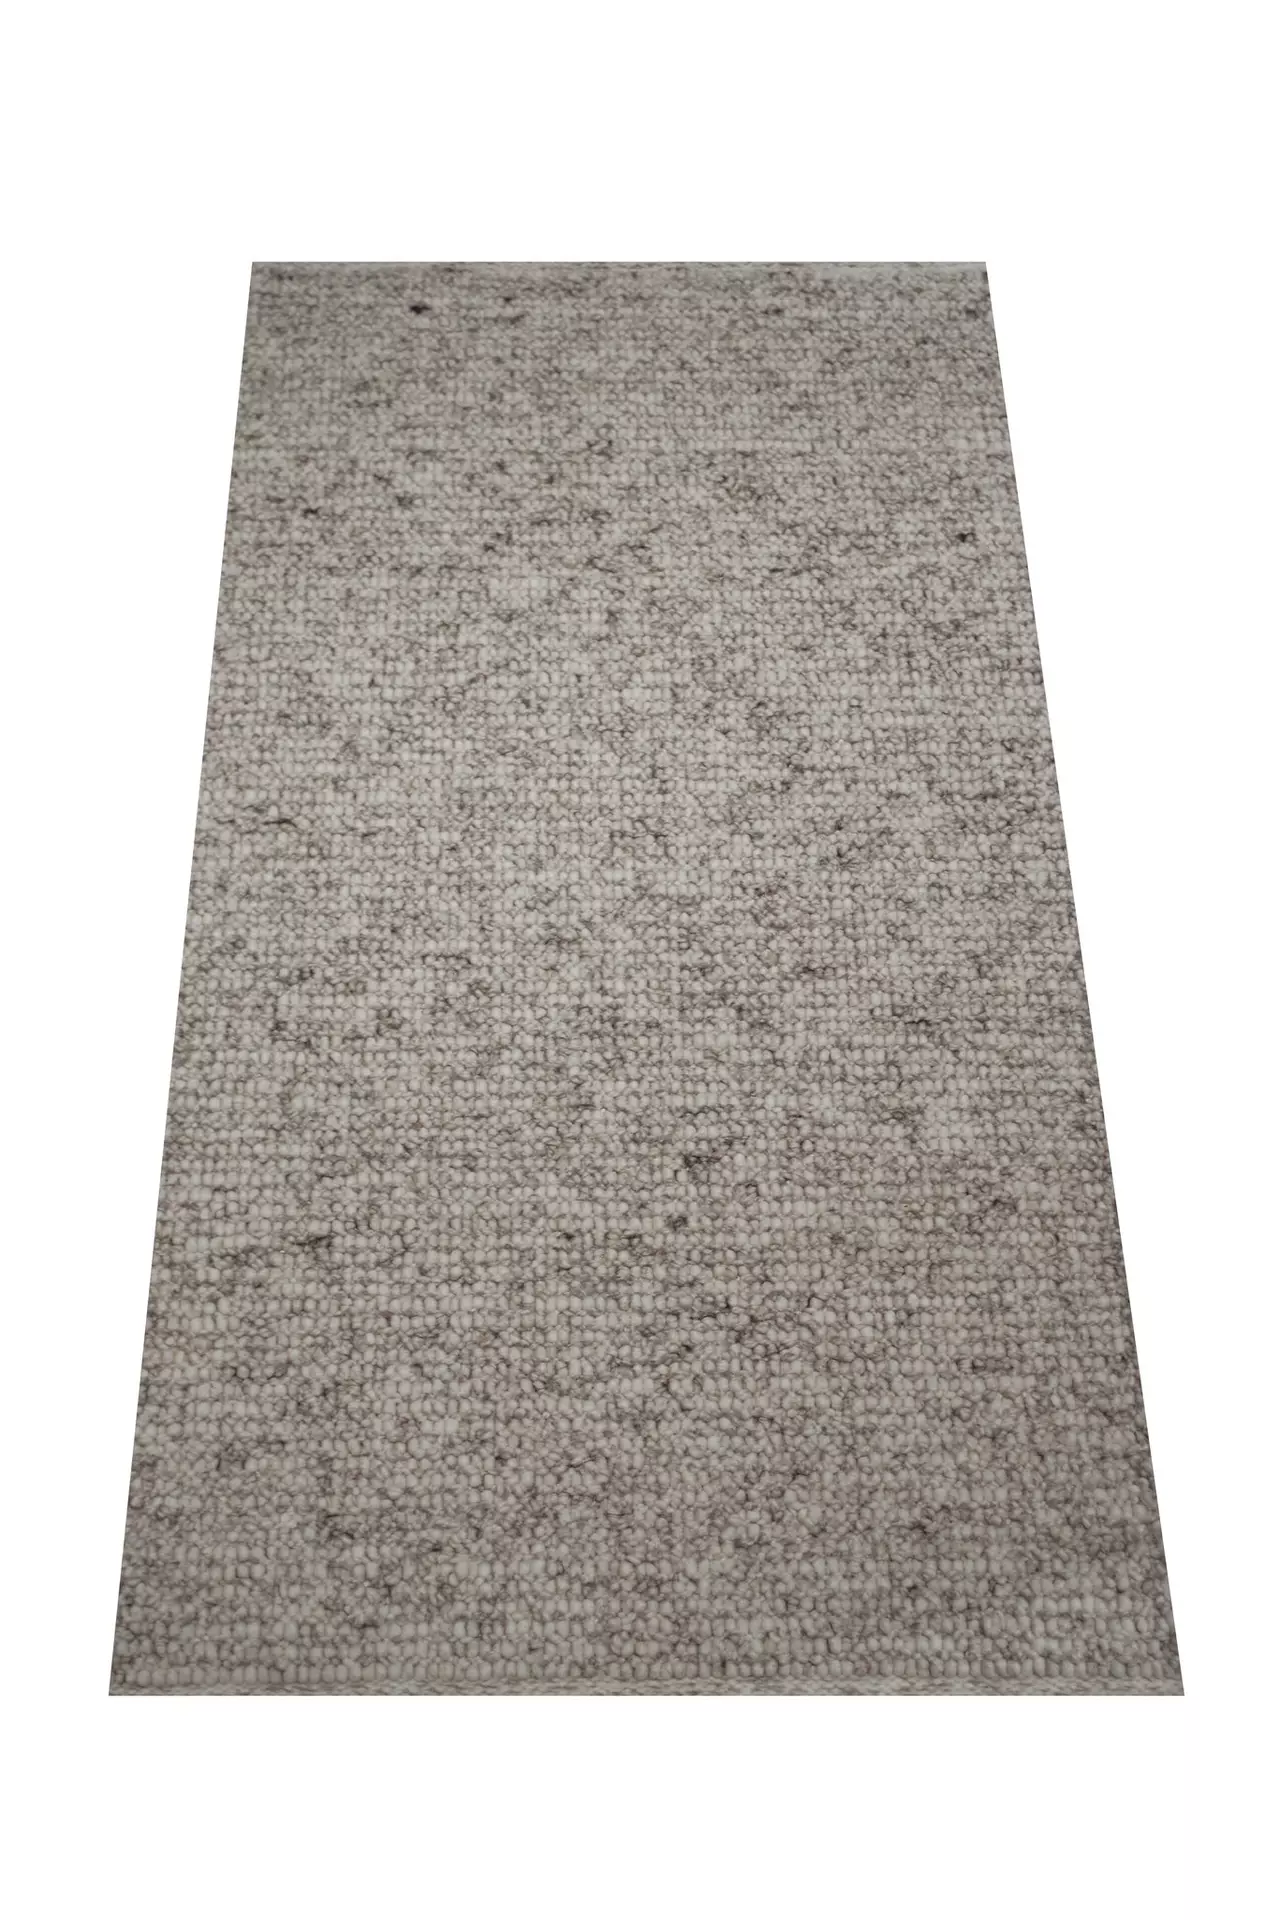 Handwebteppich Weitblick Polaris Allgäuer Teppichmanufaktur Textil 200 x 300 cm